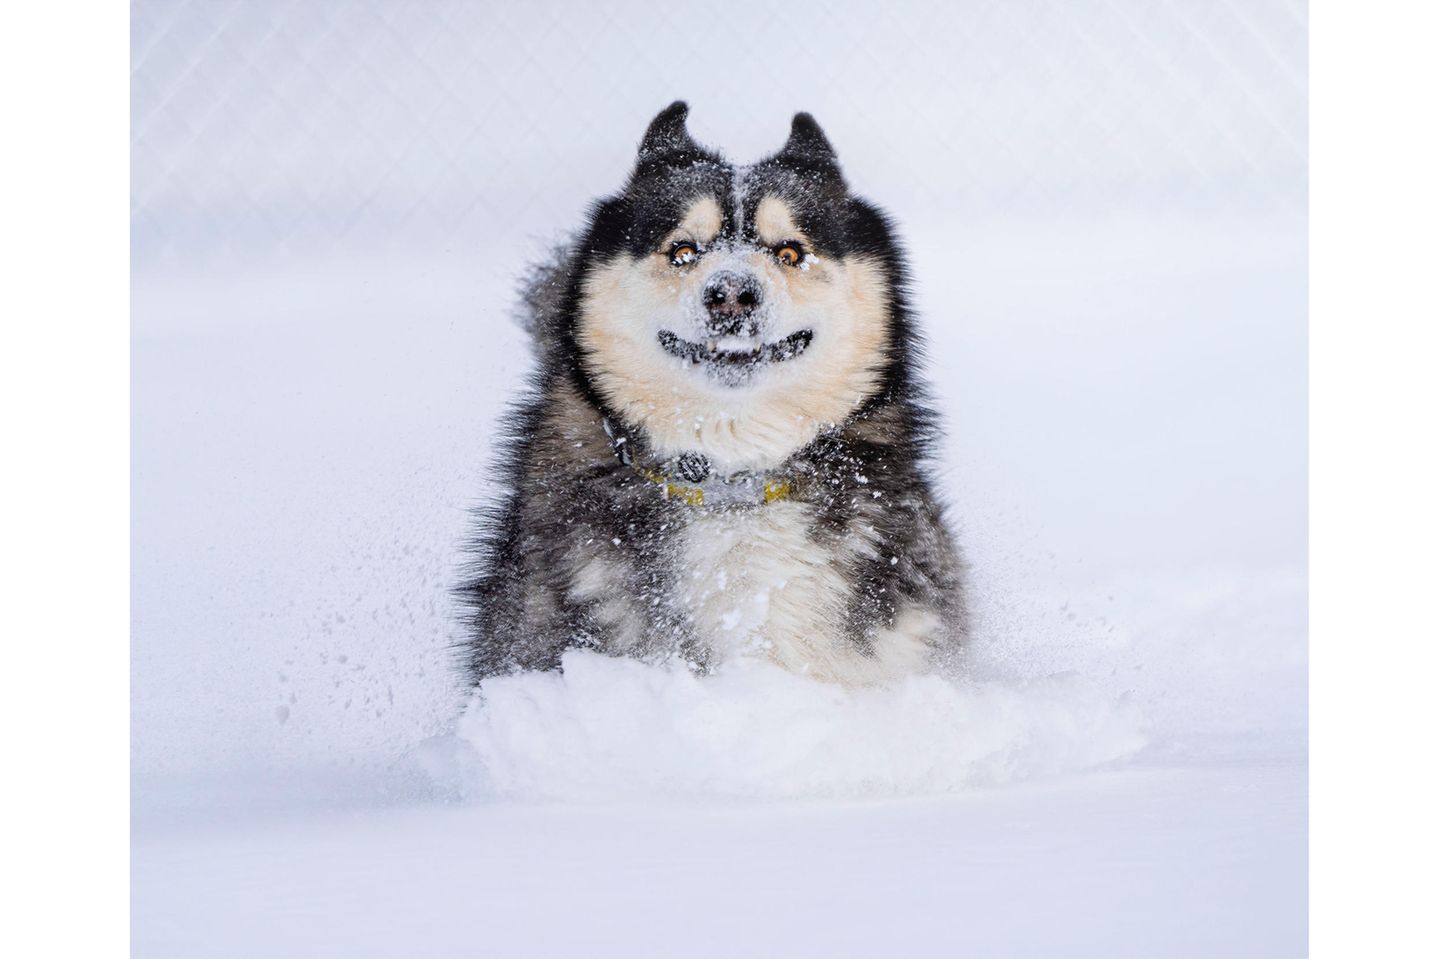 Carter sollte eigentlich getötet werden. Sein zukünftiger Besitzer flog von den USA nach Kolumbien, um ihn zu retten. Um so größer die Freude für beide, als der Hund das erste Mal Schnee erlebte.